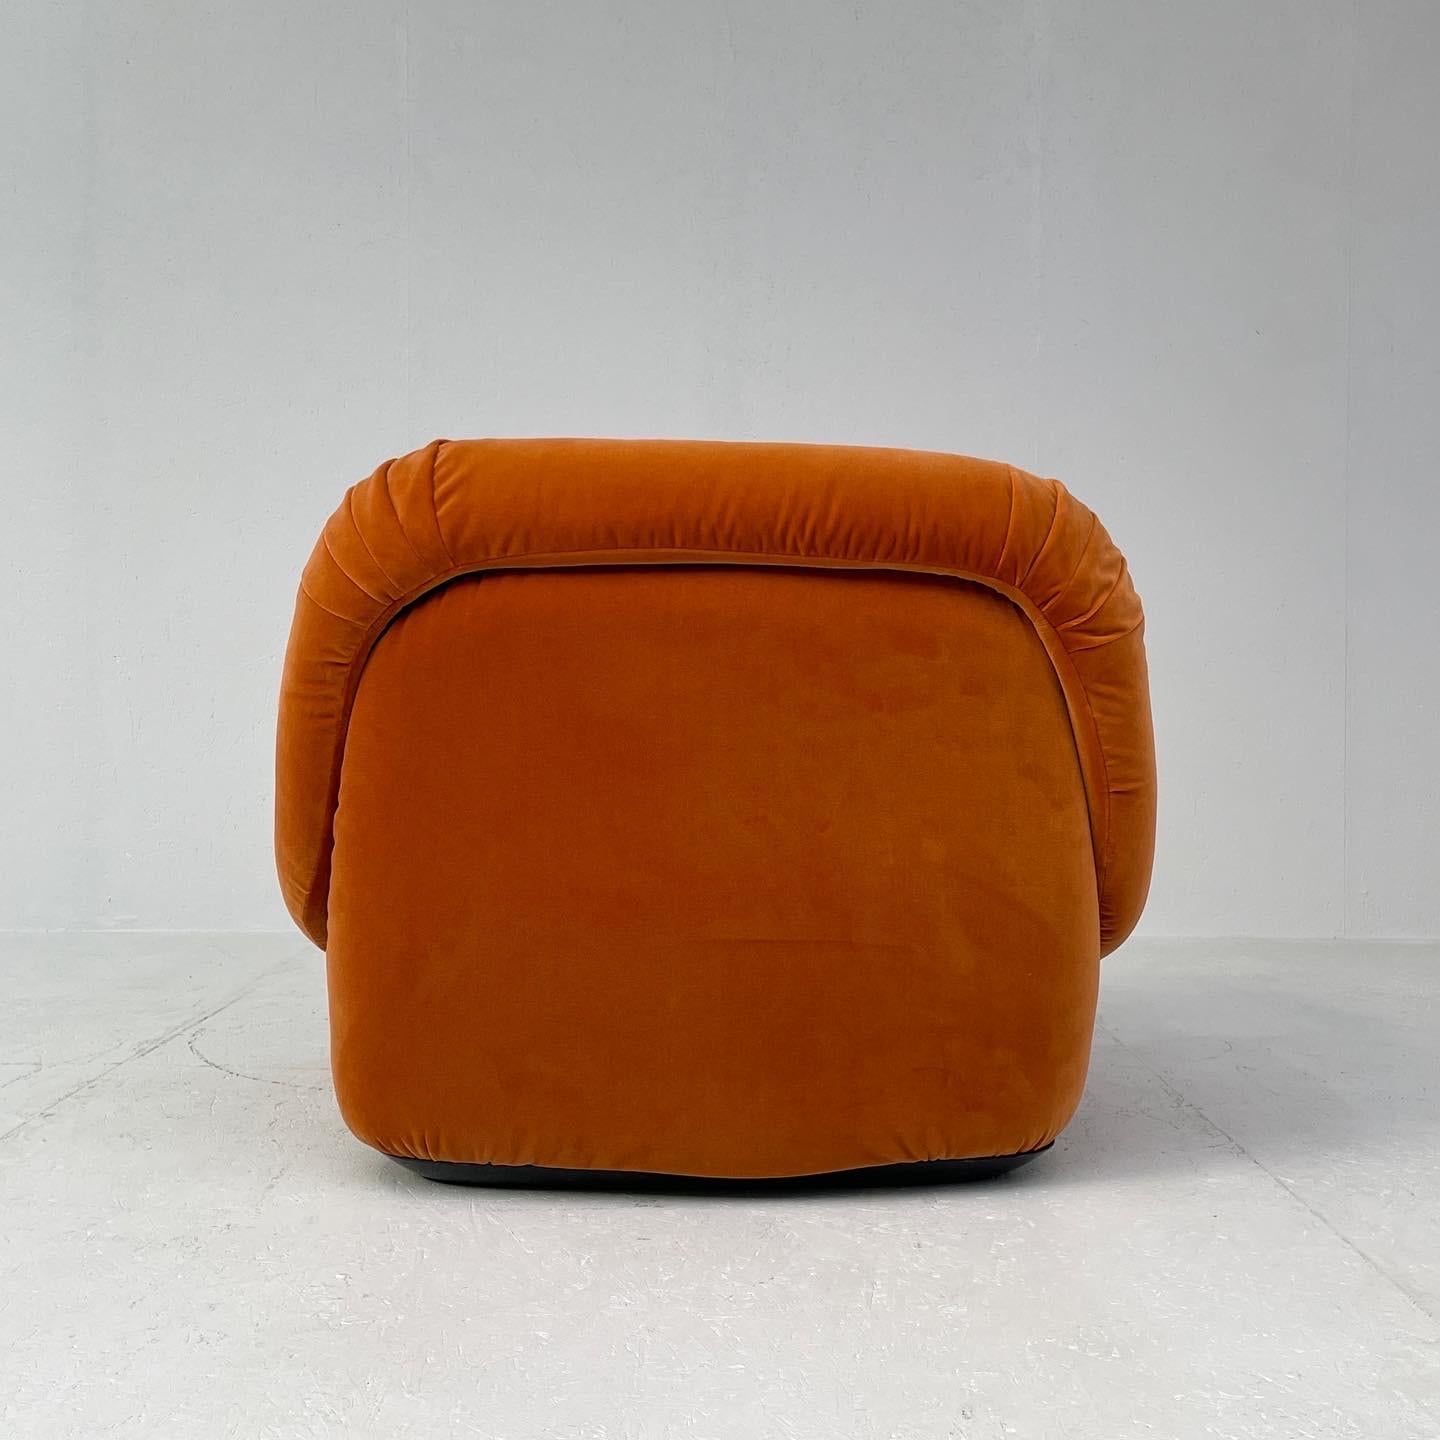 Late 20th Century Alberto Rosselli for Saporiti, 'Maxijumbo' lounge chairs, italy, 1970s